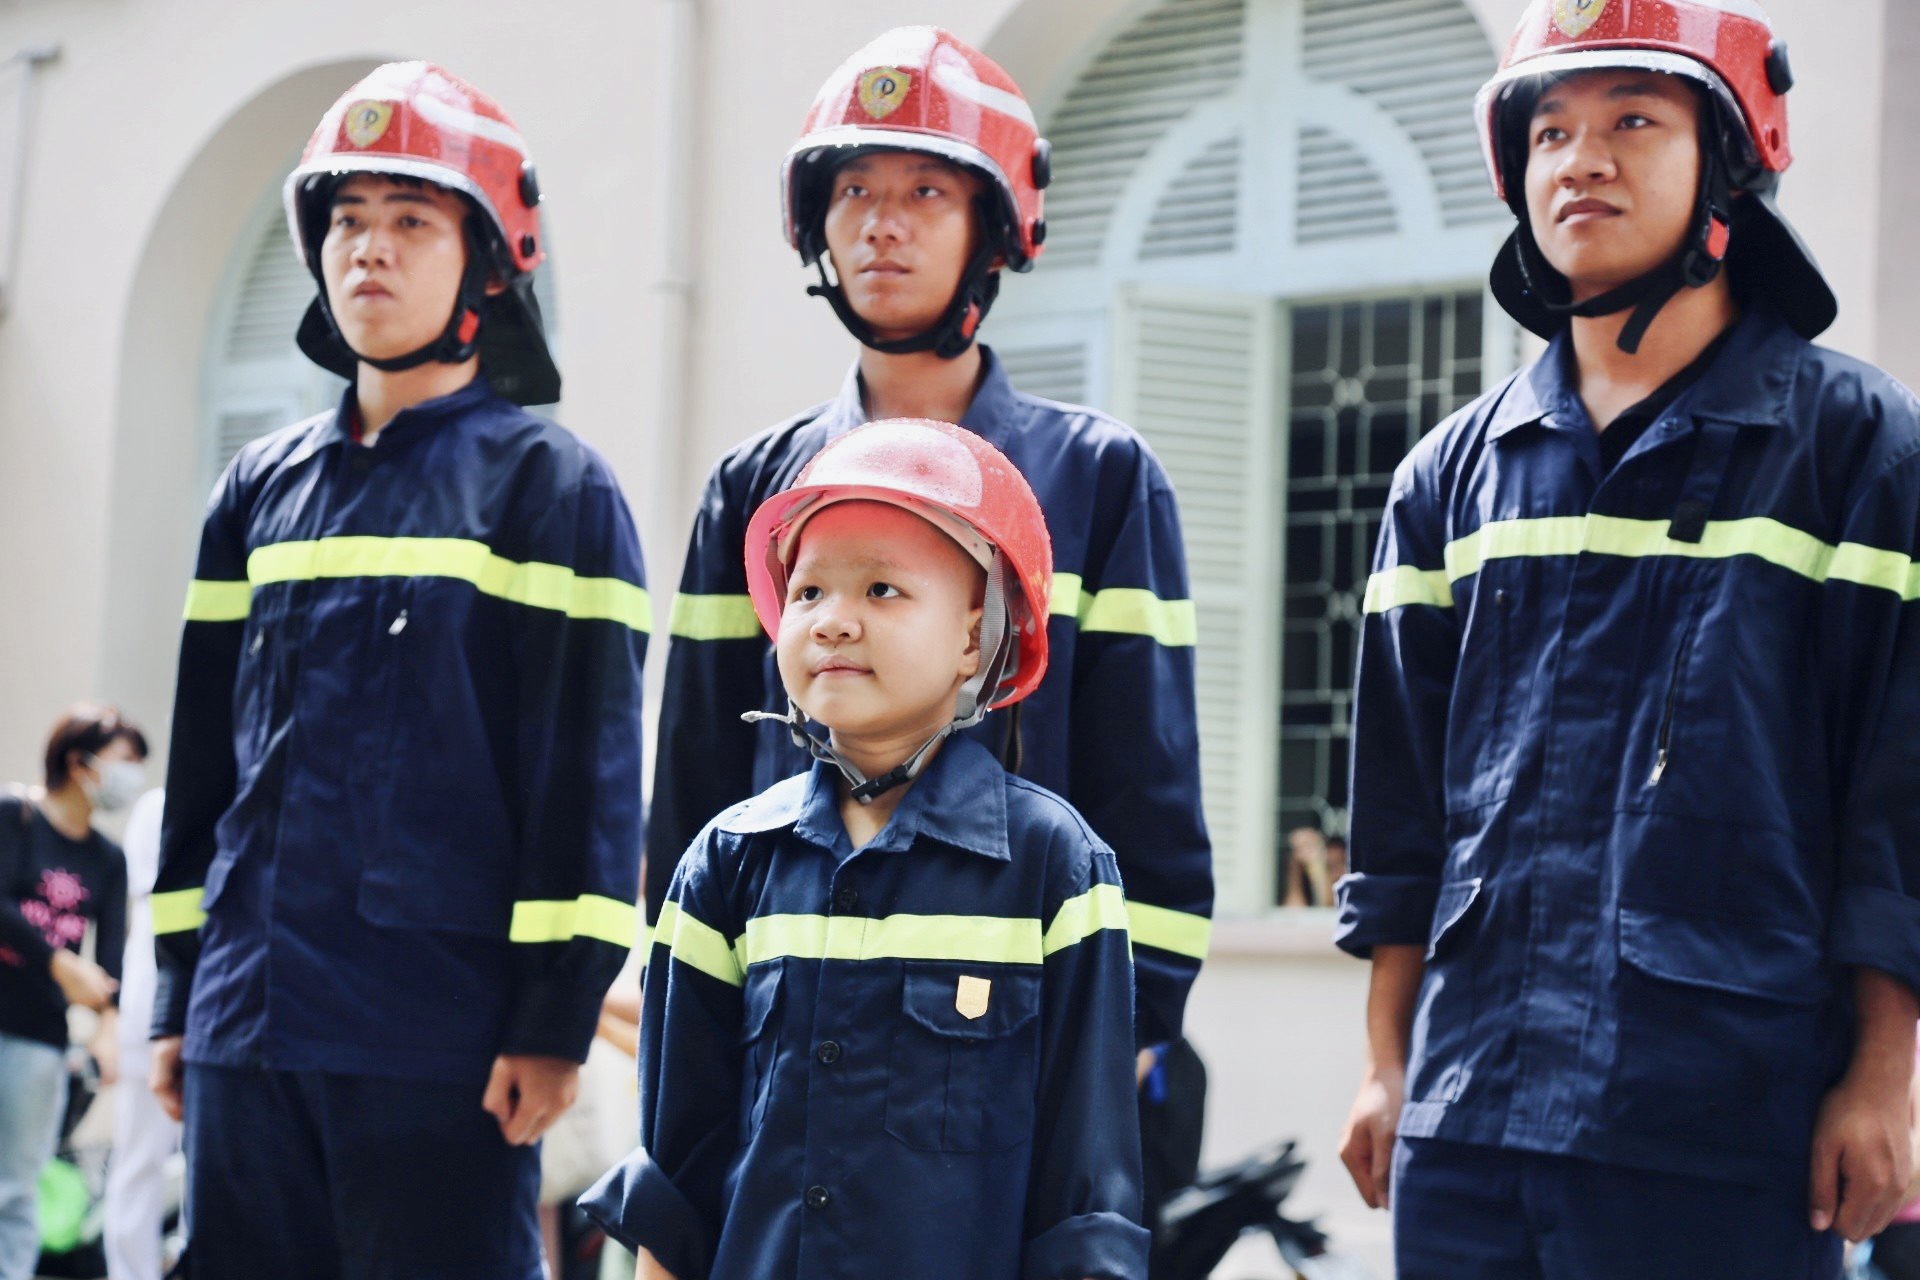 Nụ cười hạnh phúc của bé trai 7 tuổi mắc bệnh ung thư khi thỏa giấc mơ được làm lính cứu hỏa - Ảnh 5.